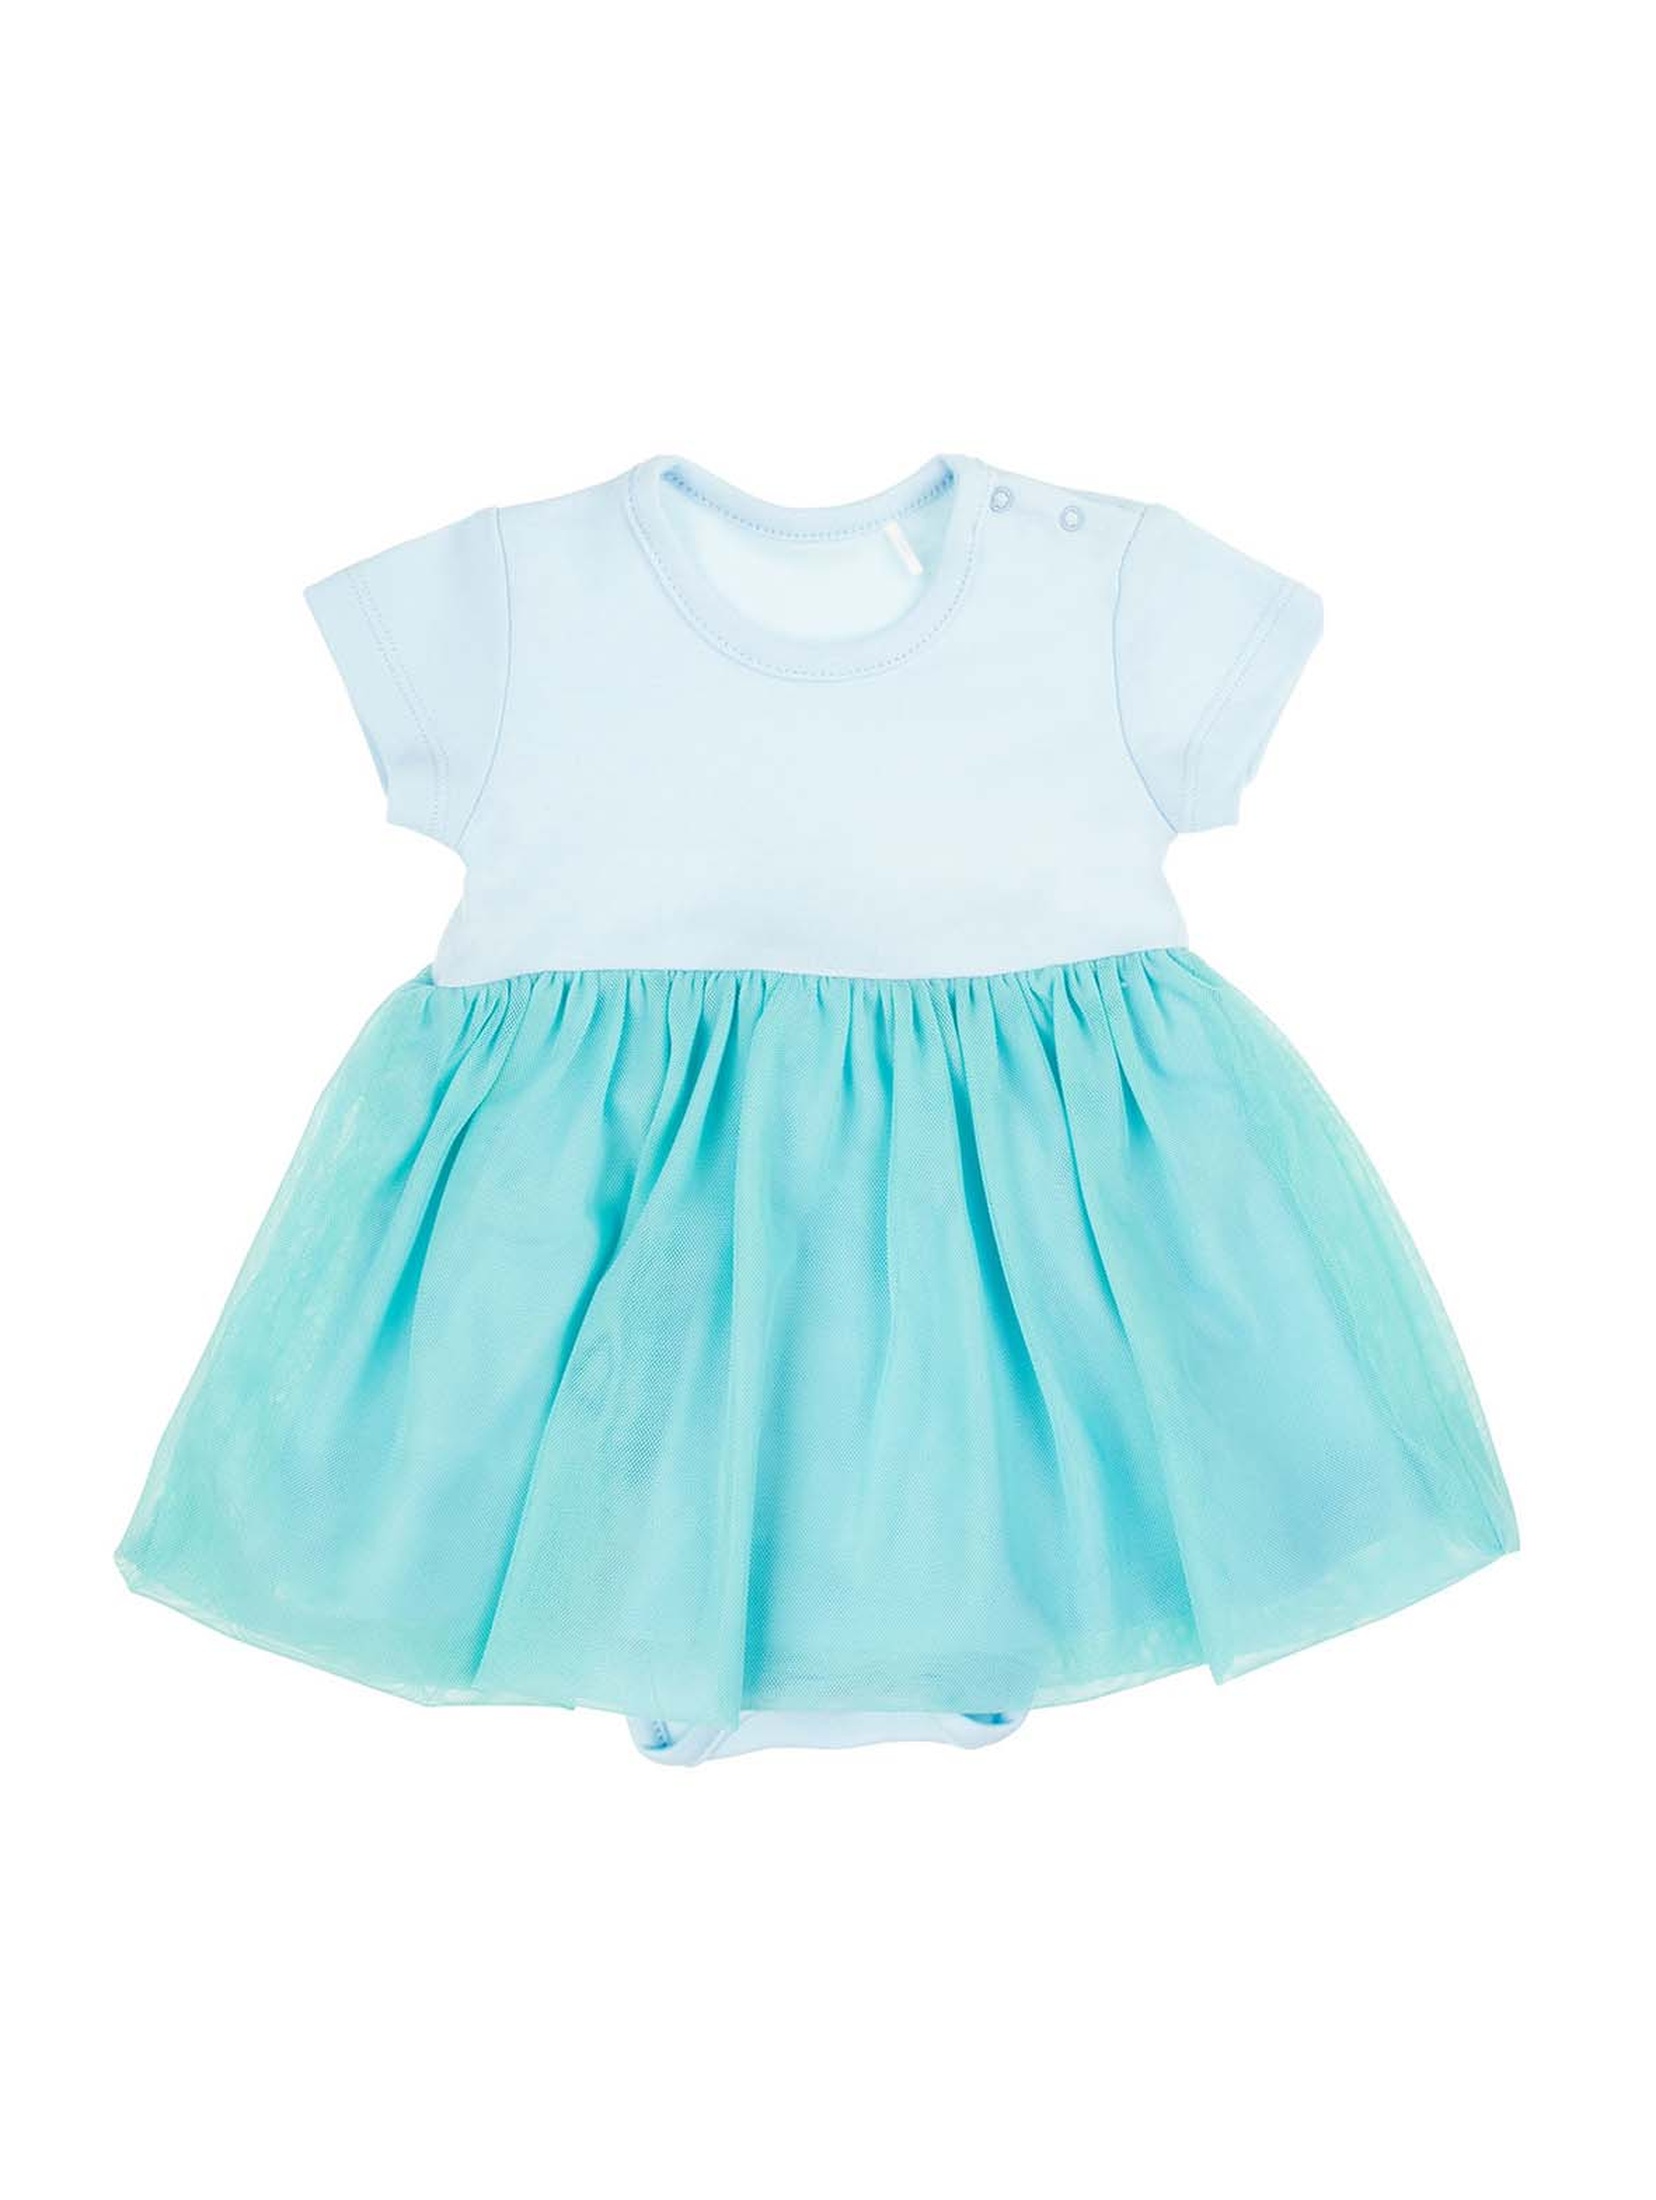 Miętowe sukienko-body niemowlęce z krótkim rękawem